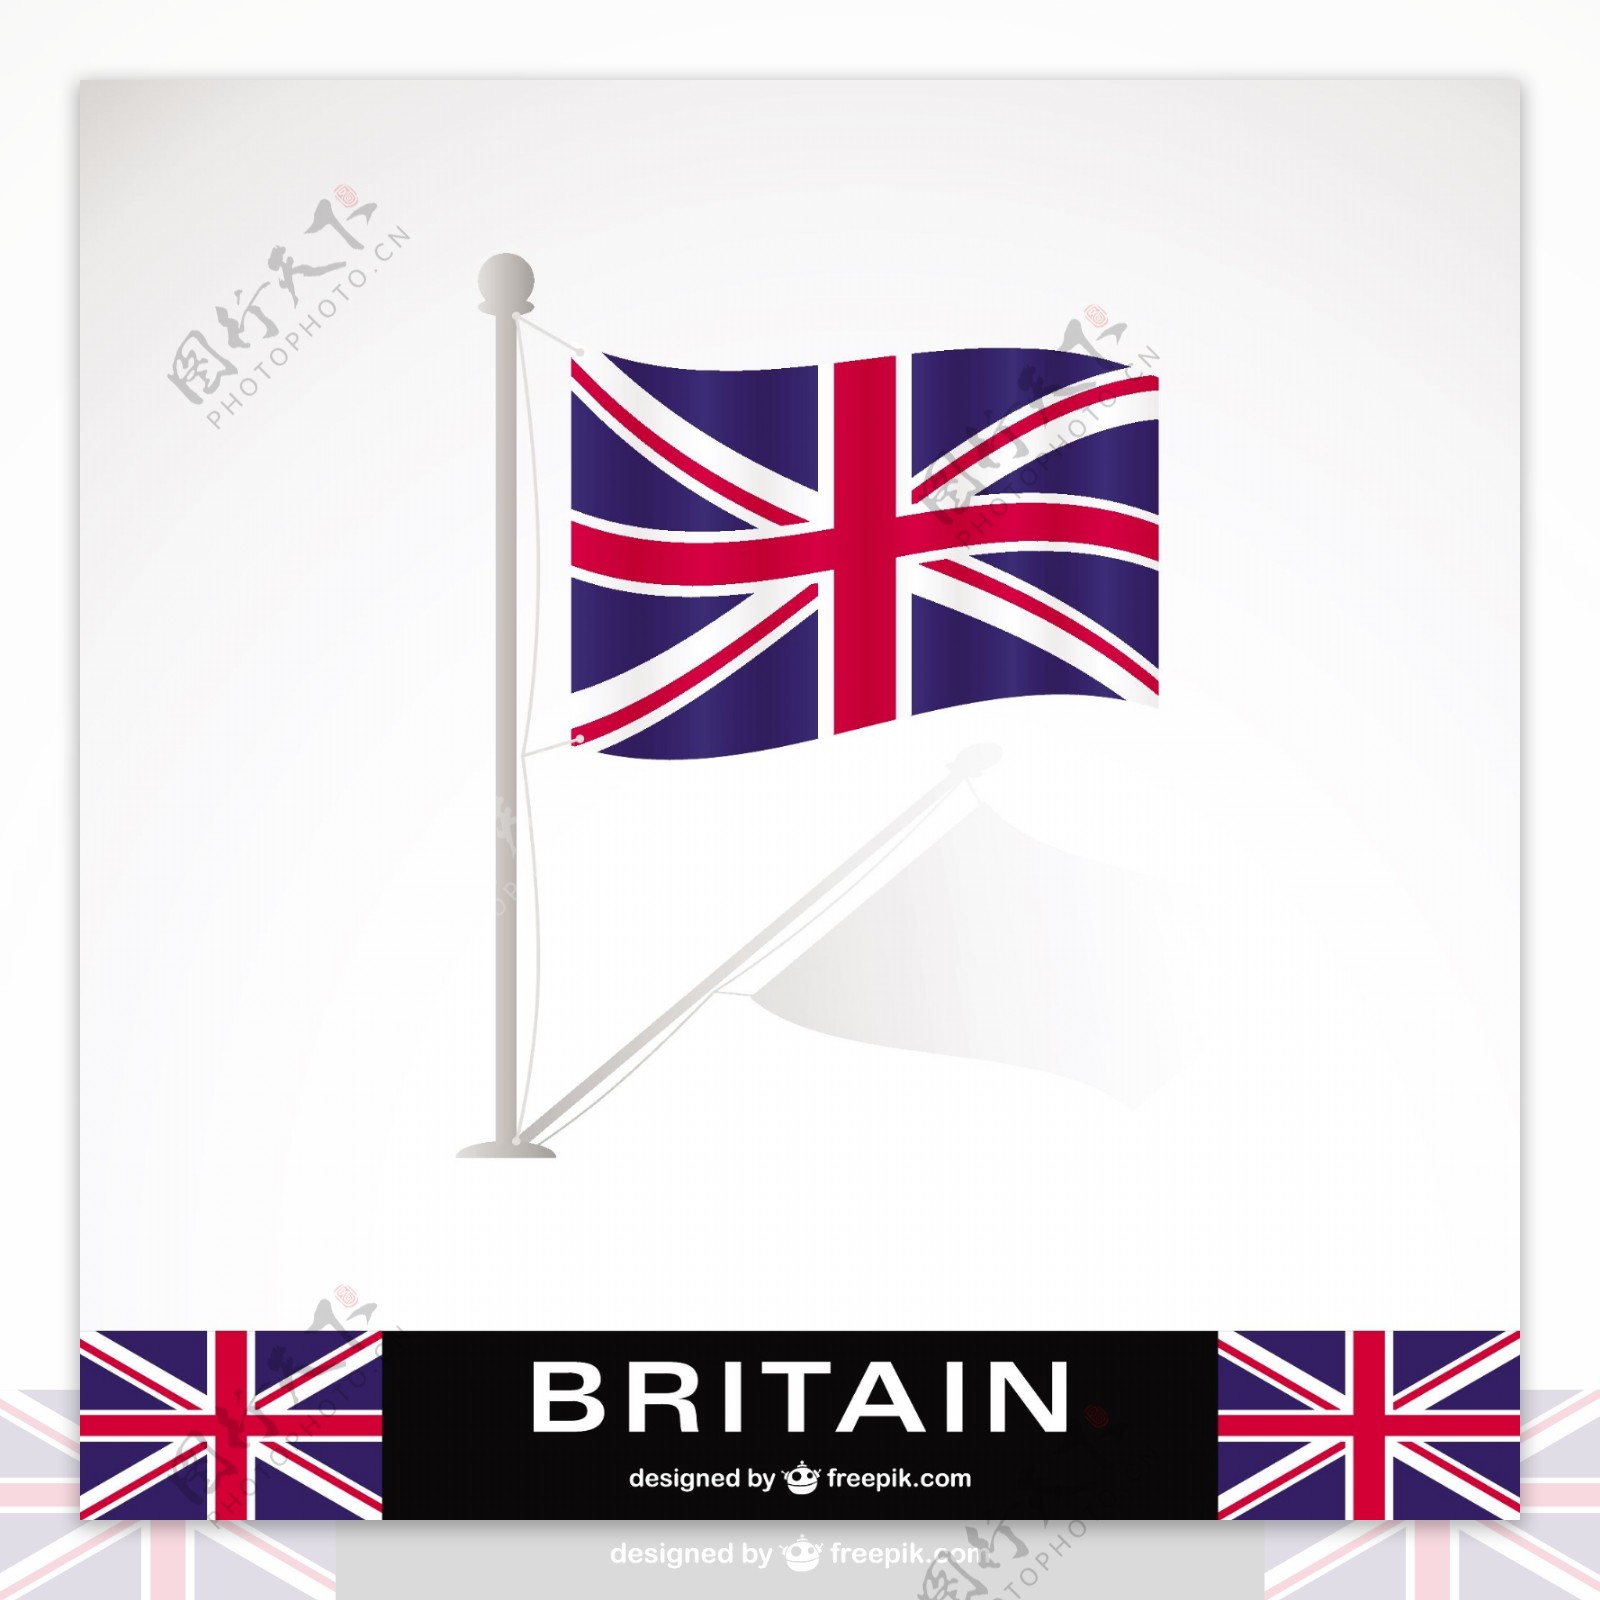 英国国旗的含义是什么？最好在给我发张英国国旗的图来！ Thank!_百度知道